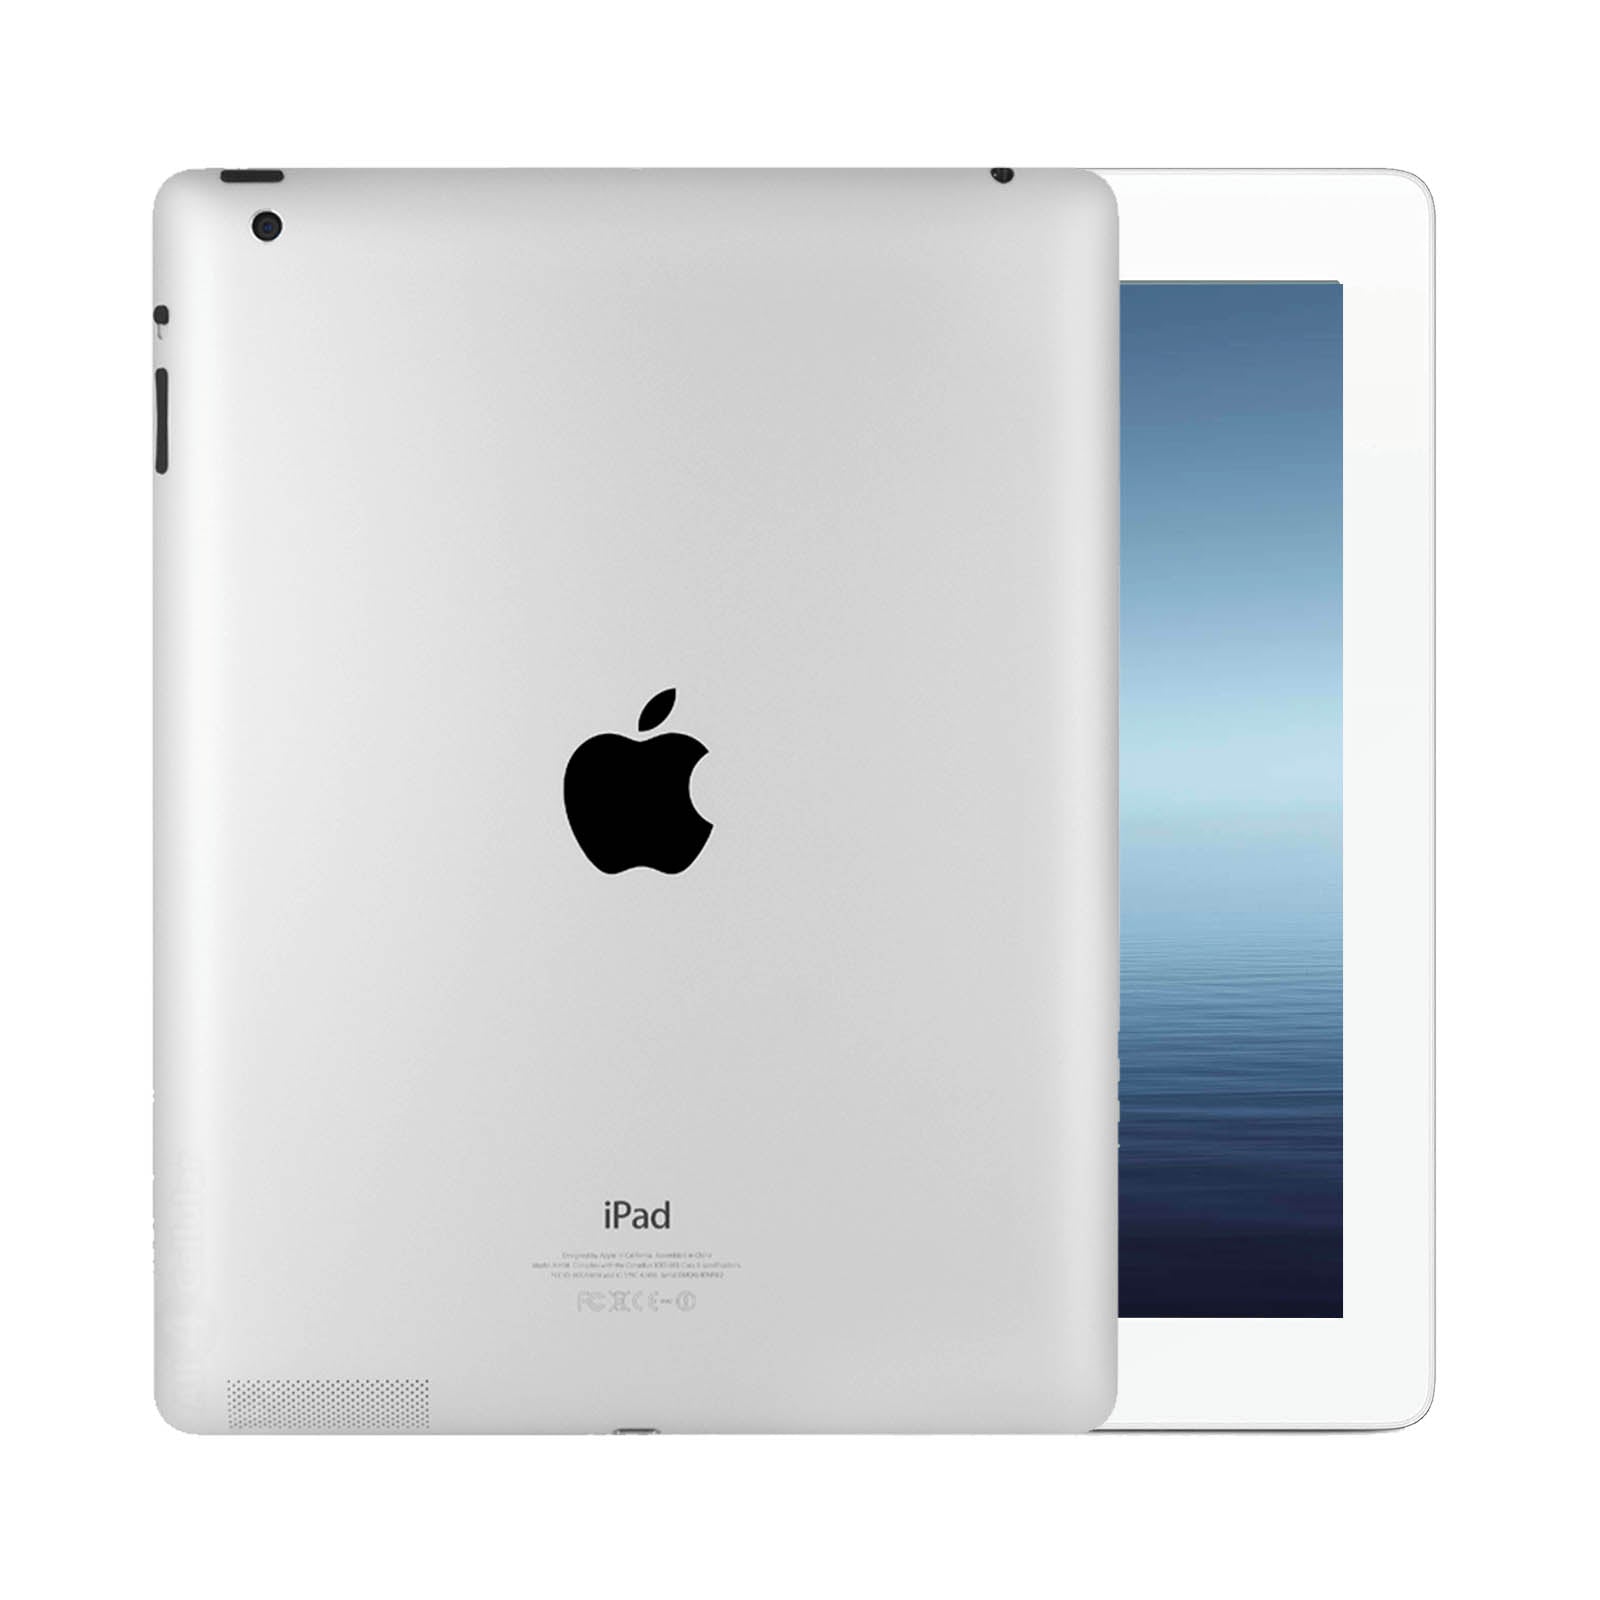 Apple iPad 3 64GB White Fair - WiFI